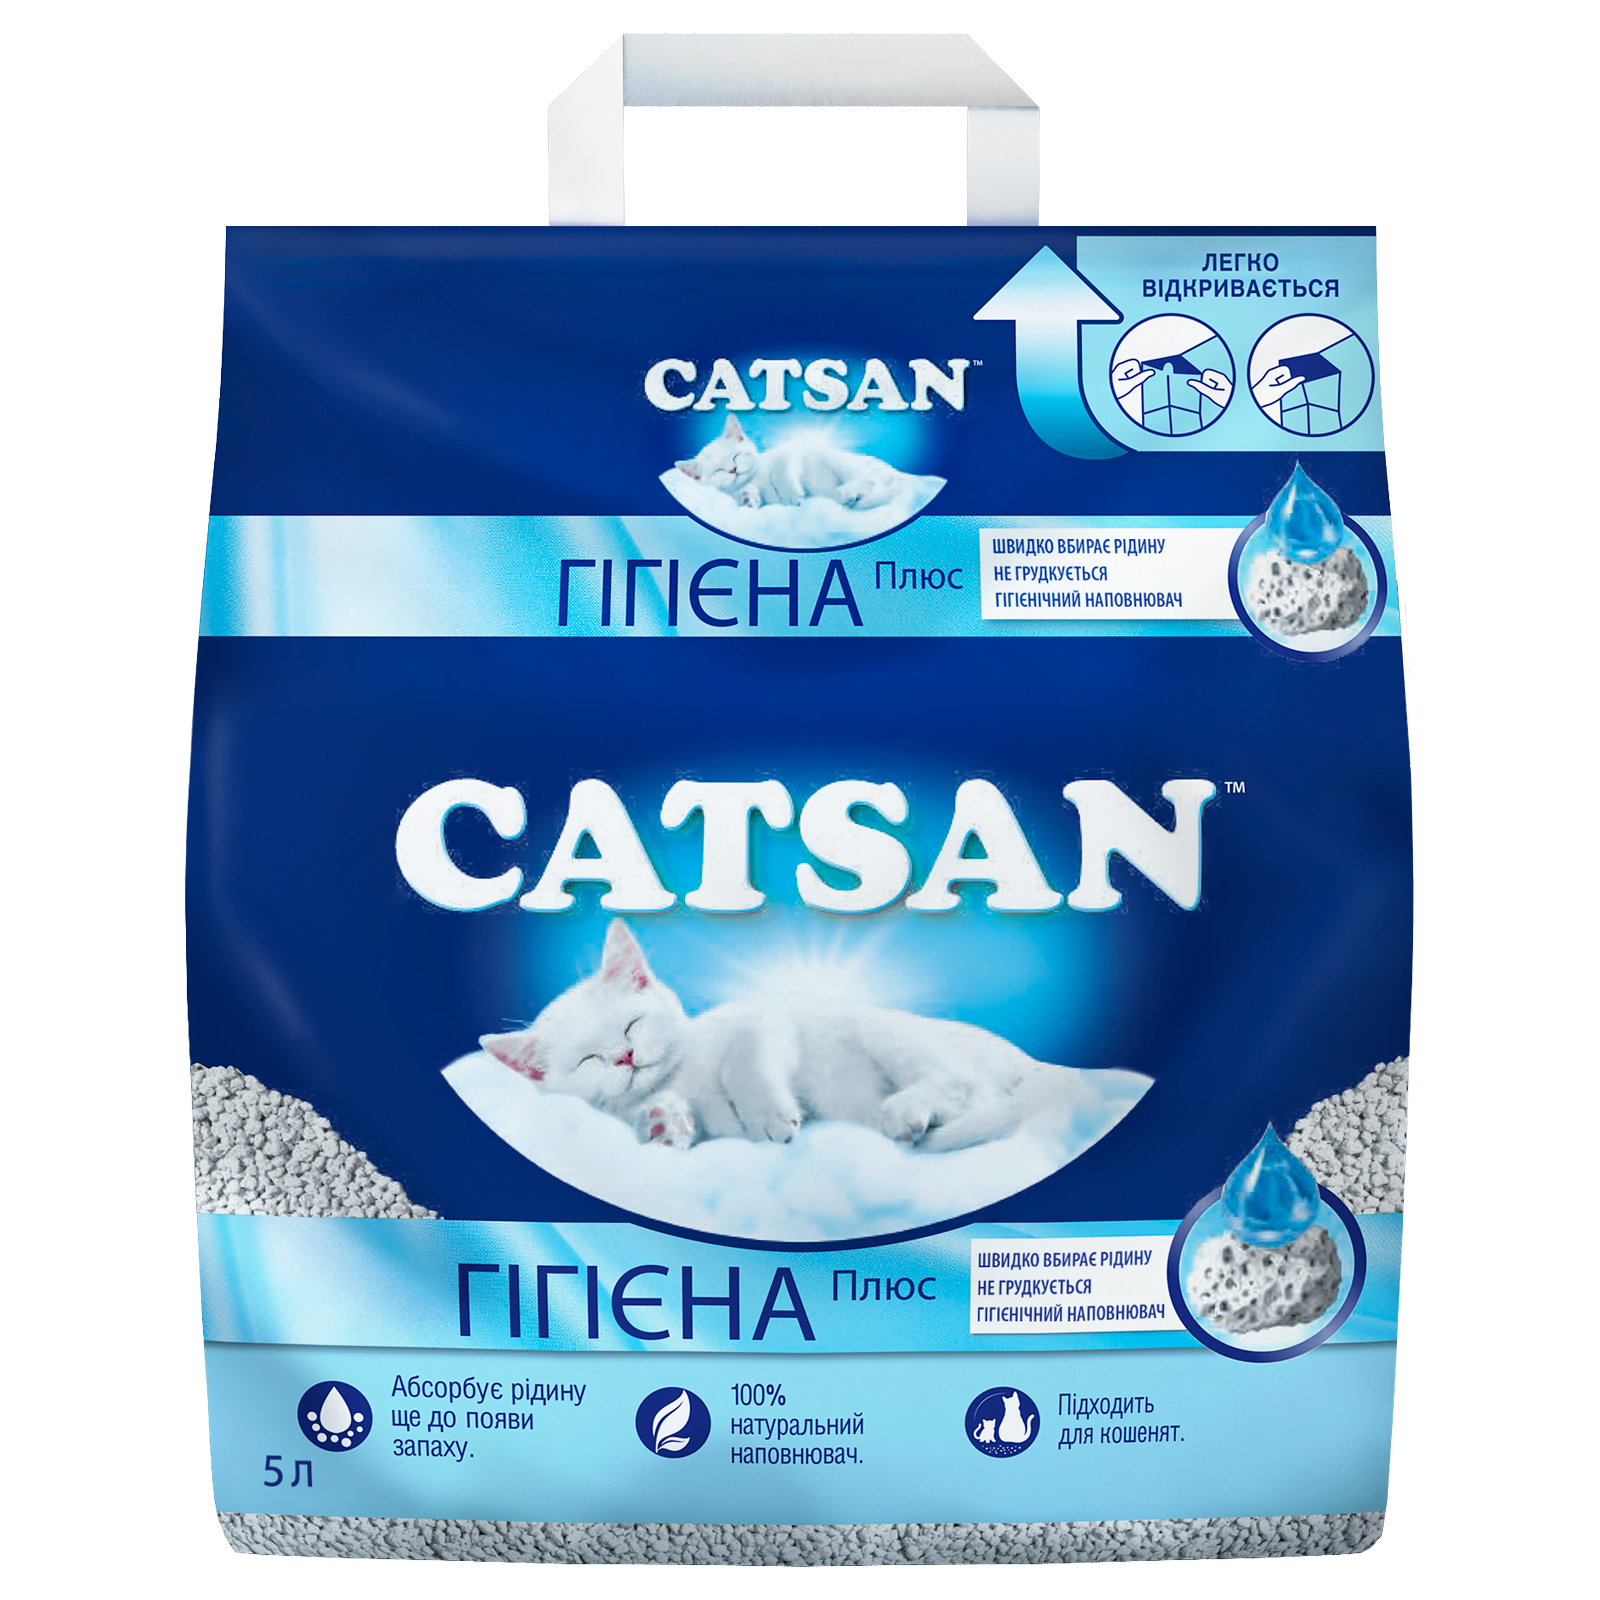 Наполнитель для туалета Catsan Hygiene plus Минеральный впитывающий 10 л (4008429130403) изображение 2